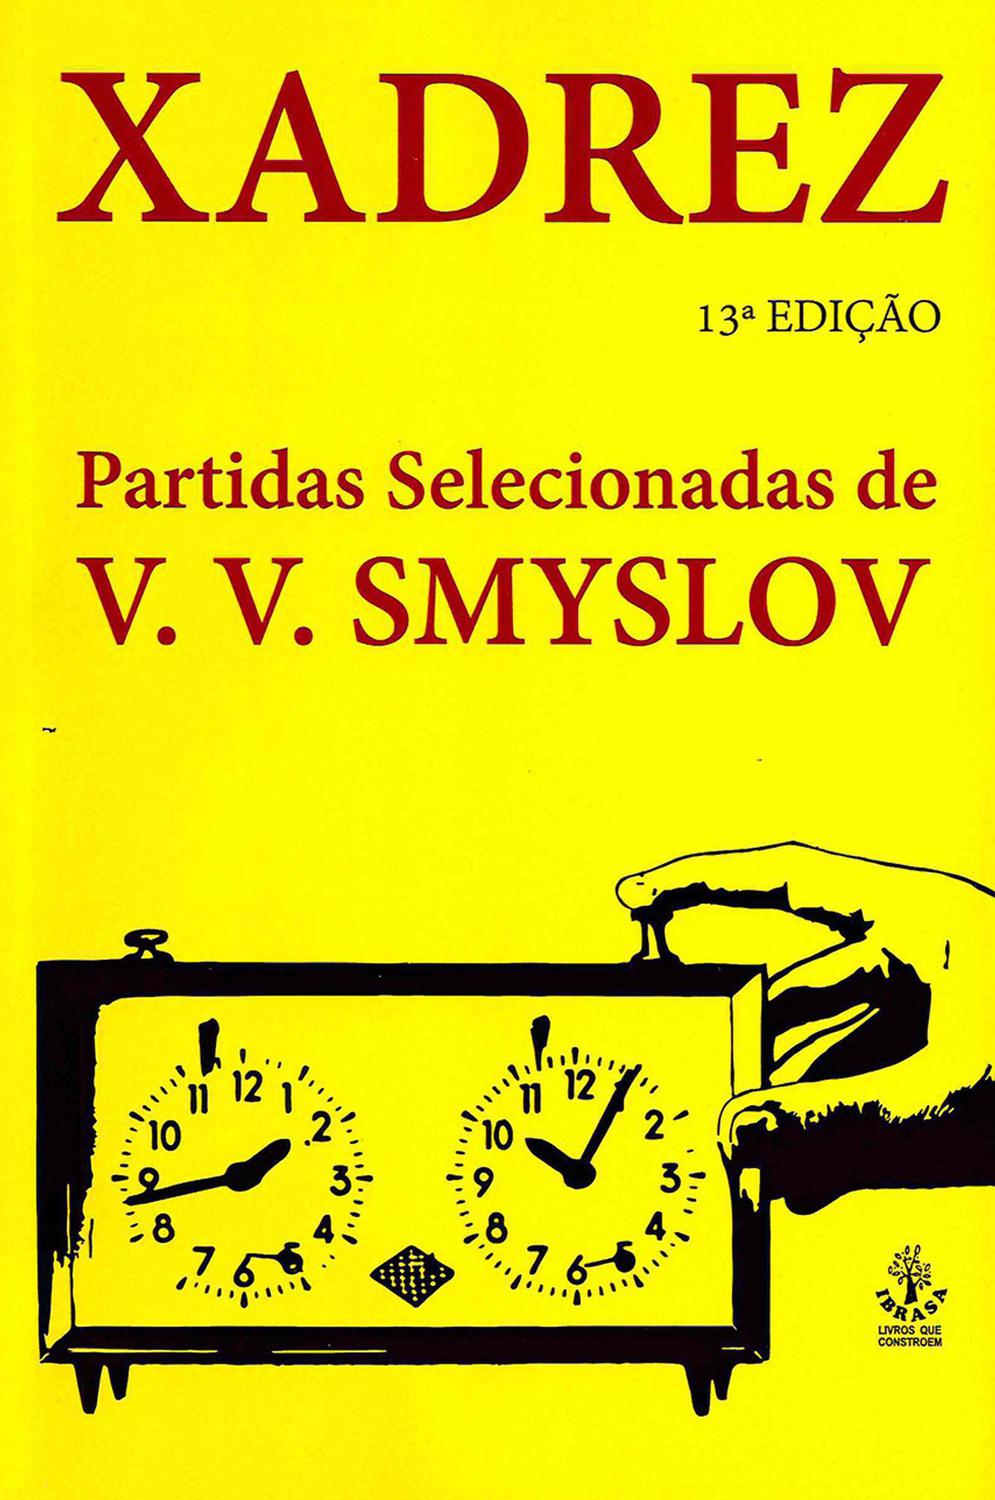 Xadrez: Partidas selecionadas de V. V. Smyslov